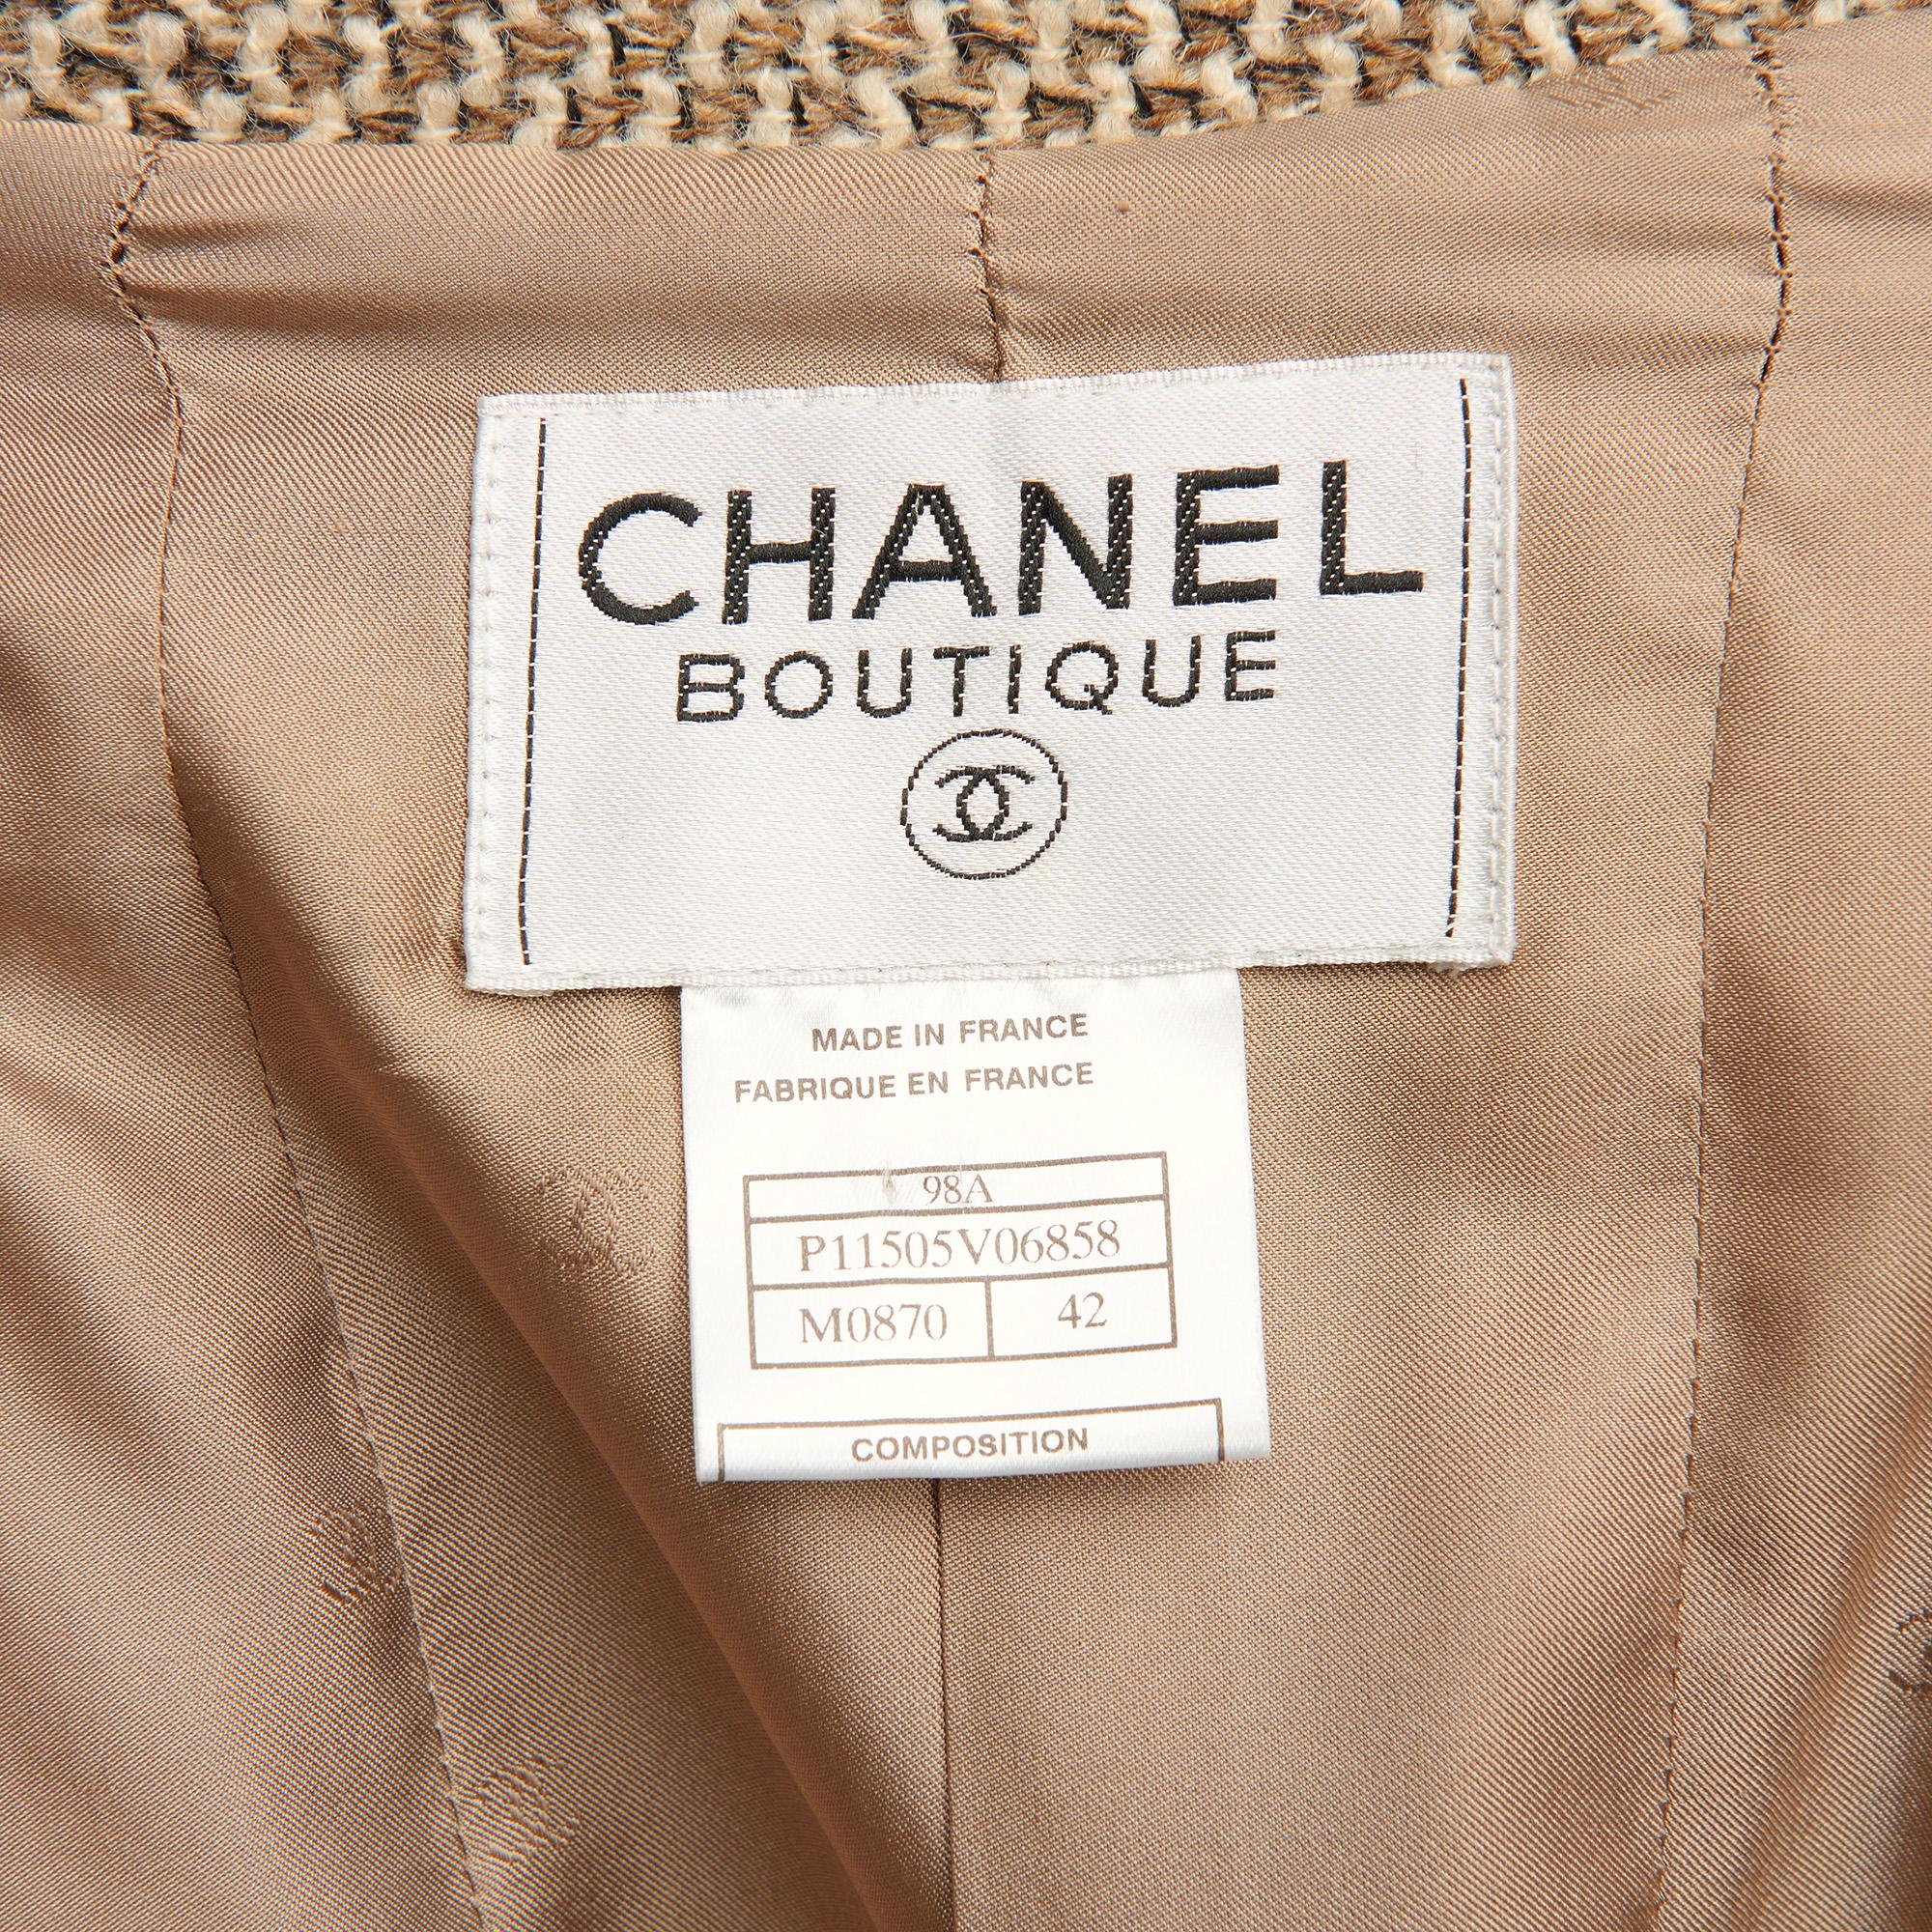 Women's 1990's Chanel Beige & Brown Wool Tweed Vintage Skirt Suit